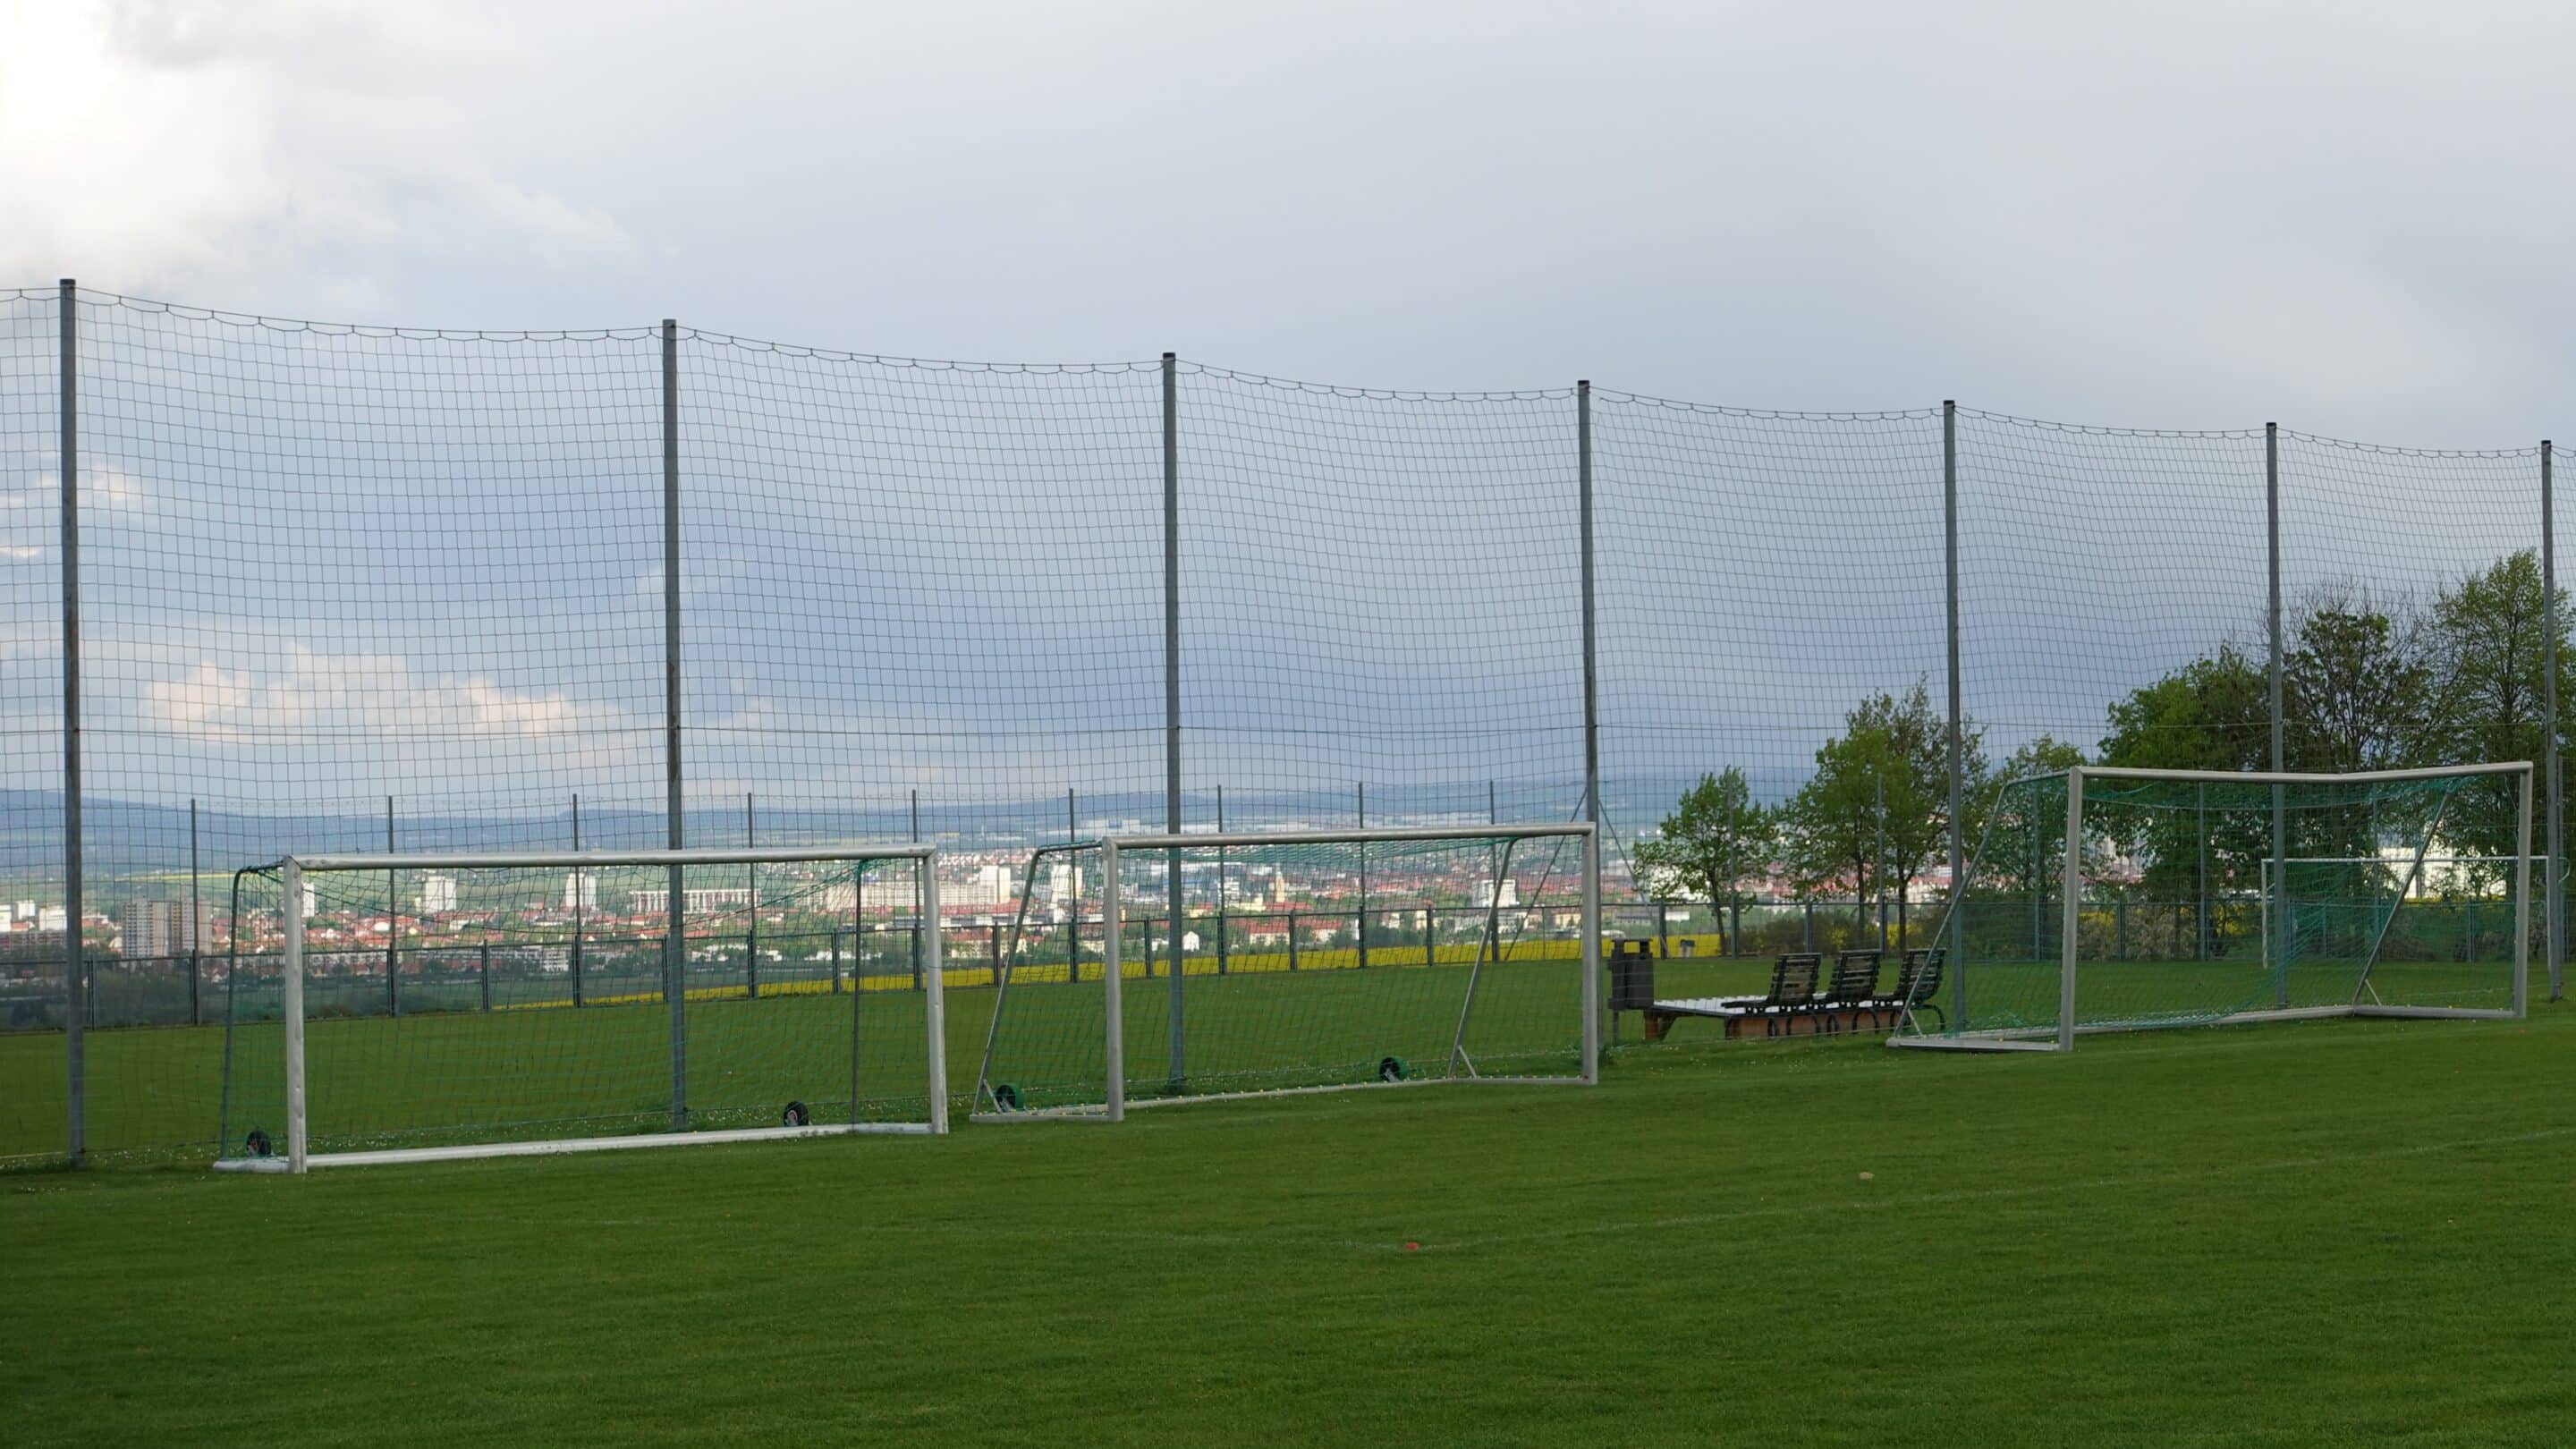 Der Sportplatz mit Fussballtoren von Salomonsborn in Thüringen einem Ortsteil von Erfurt.